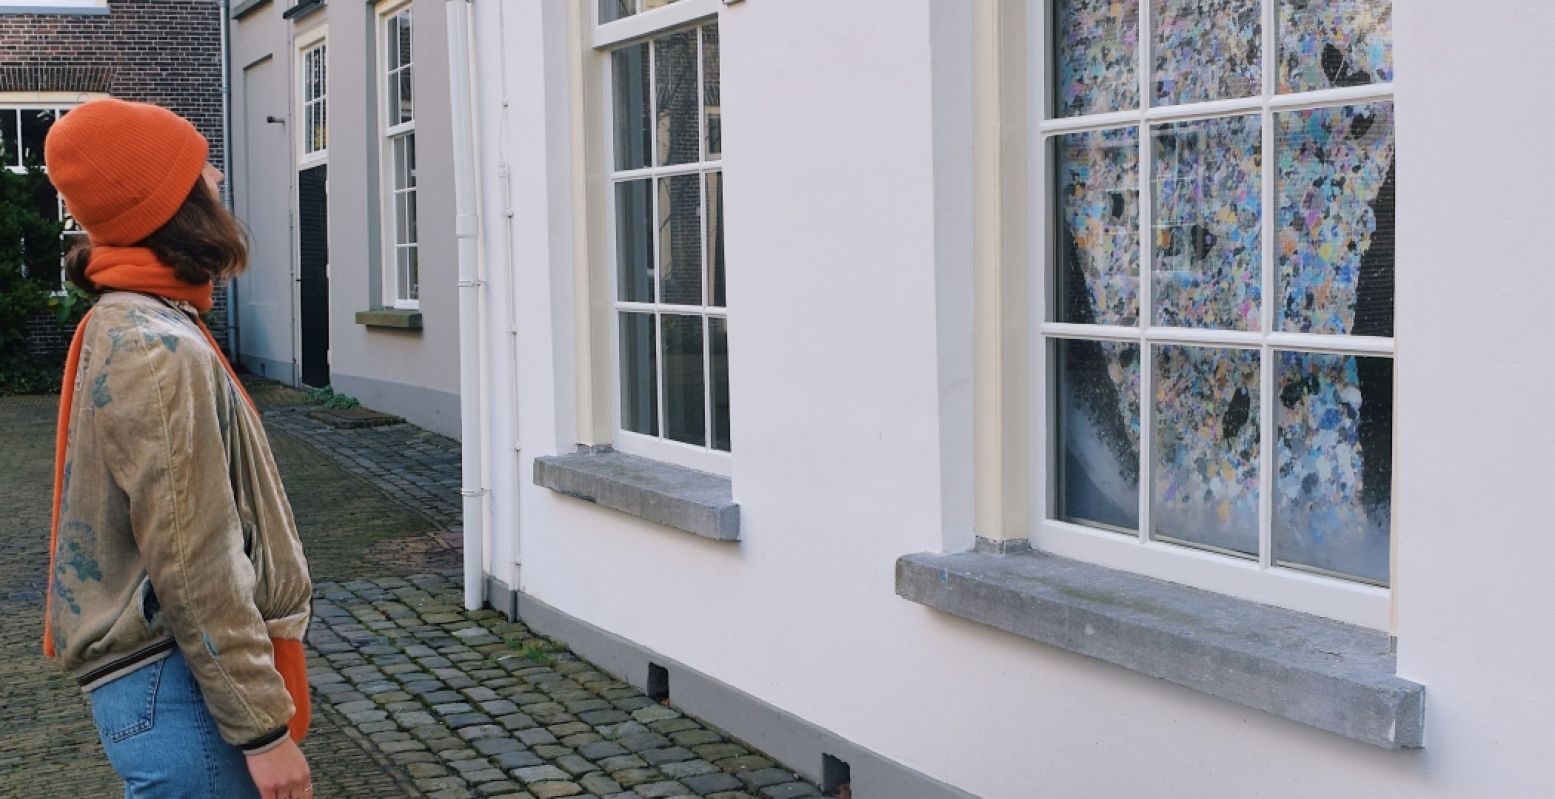 De expo 'Behind Closed Windows' is te zien achter de ramen van het Prinsenkwartier. Dus je kunt er lekker buiten langs wandelen. Foto: Science Centre Delft © Yara Boom